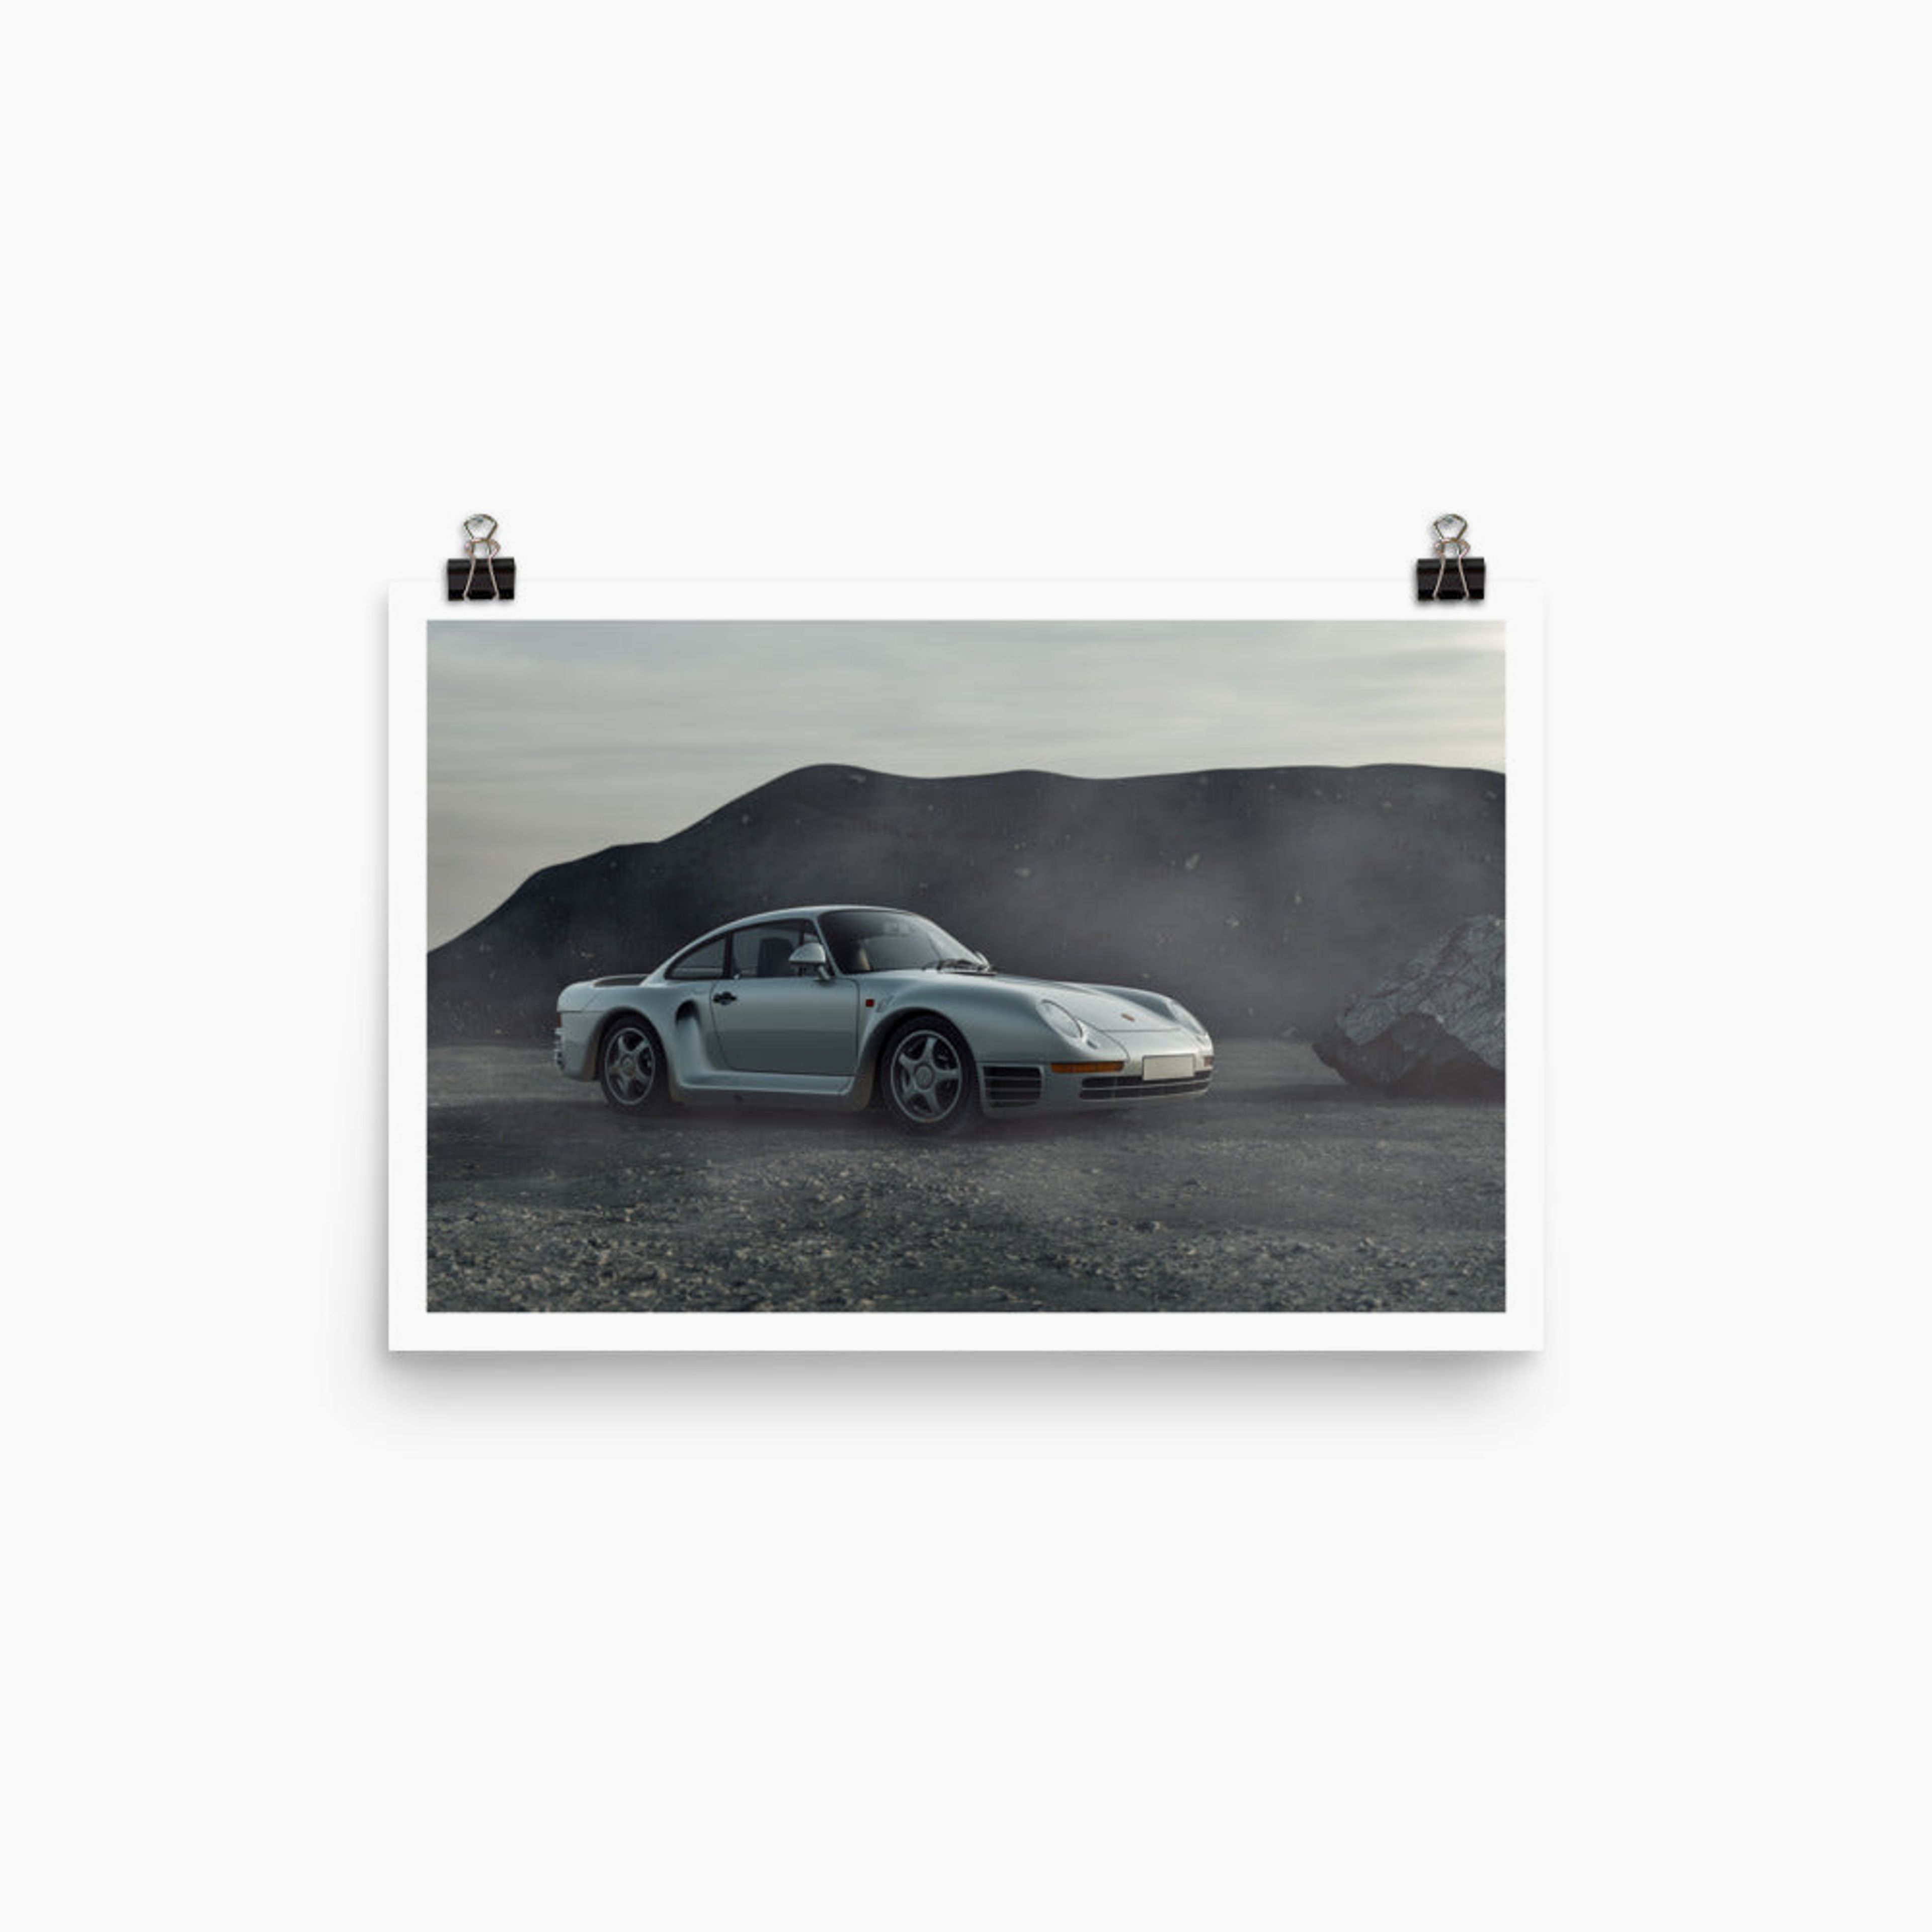 Porsche 959 in Desert